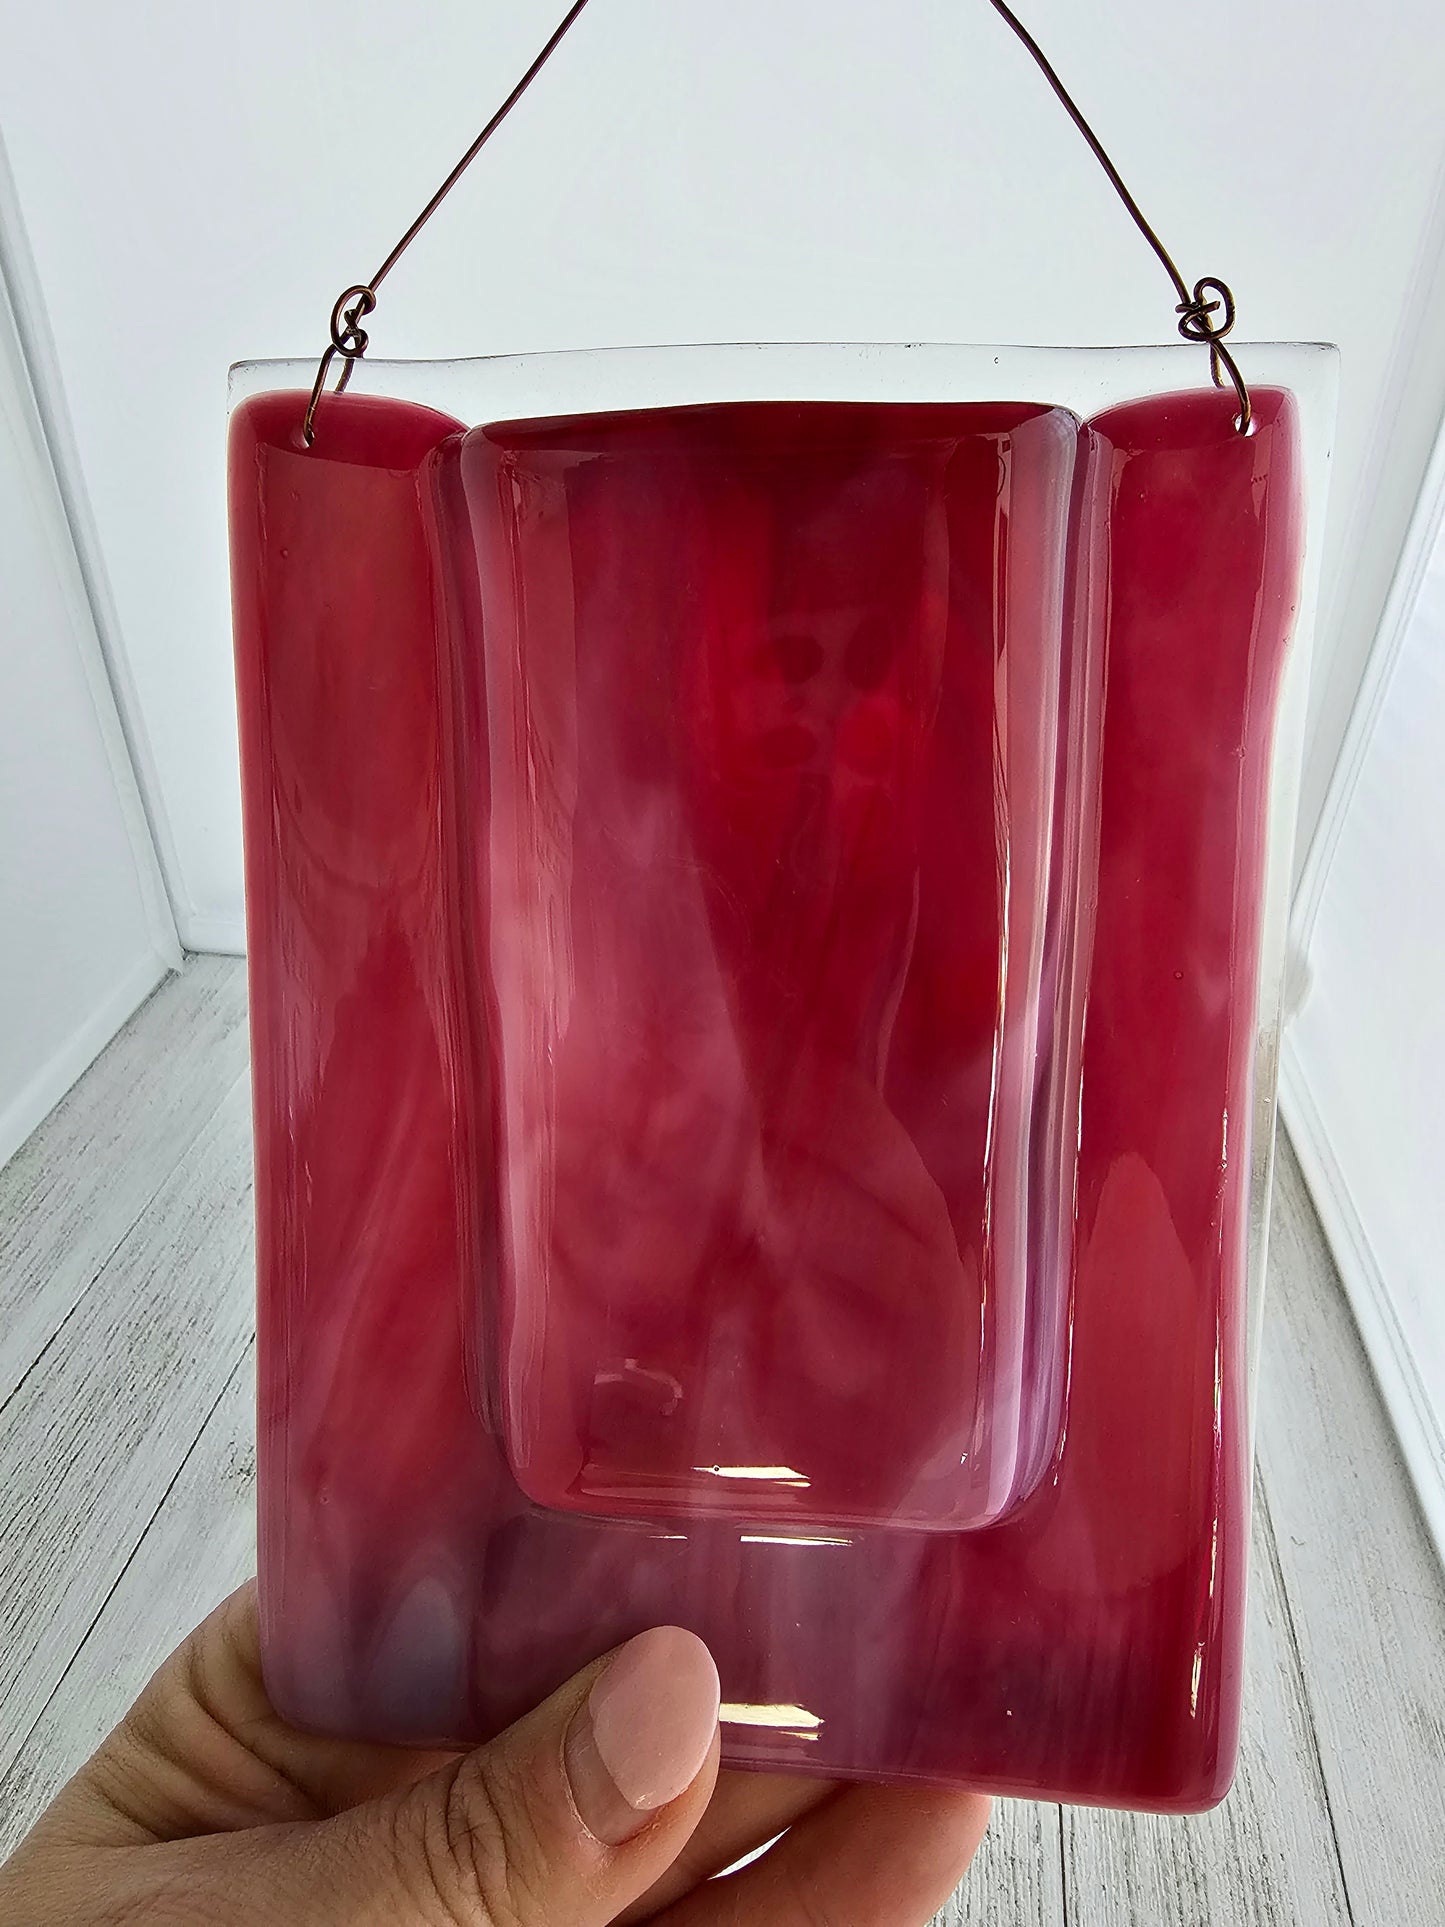 Pink Cranberry Wall Vase, Fused Glass Pocket Vase